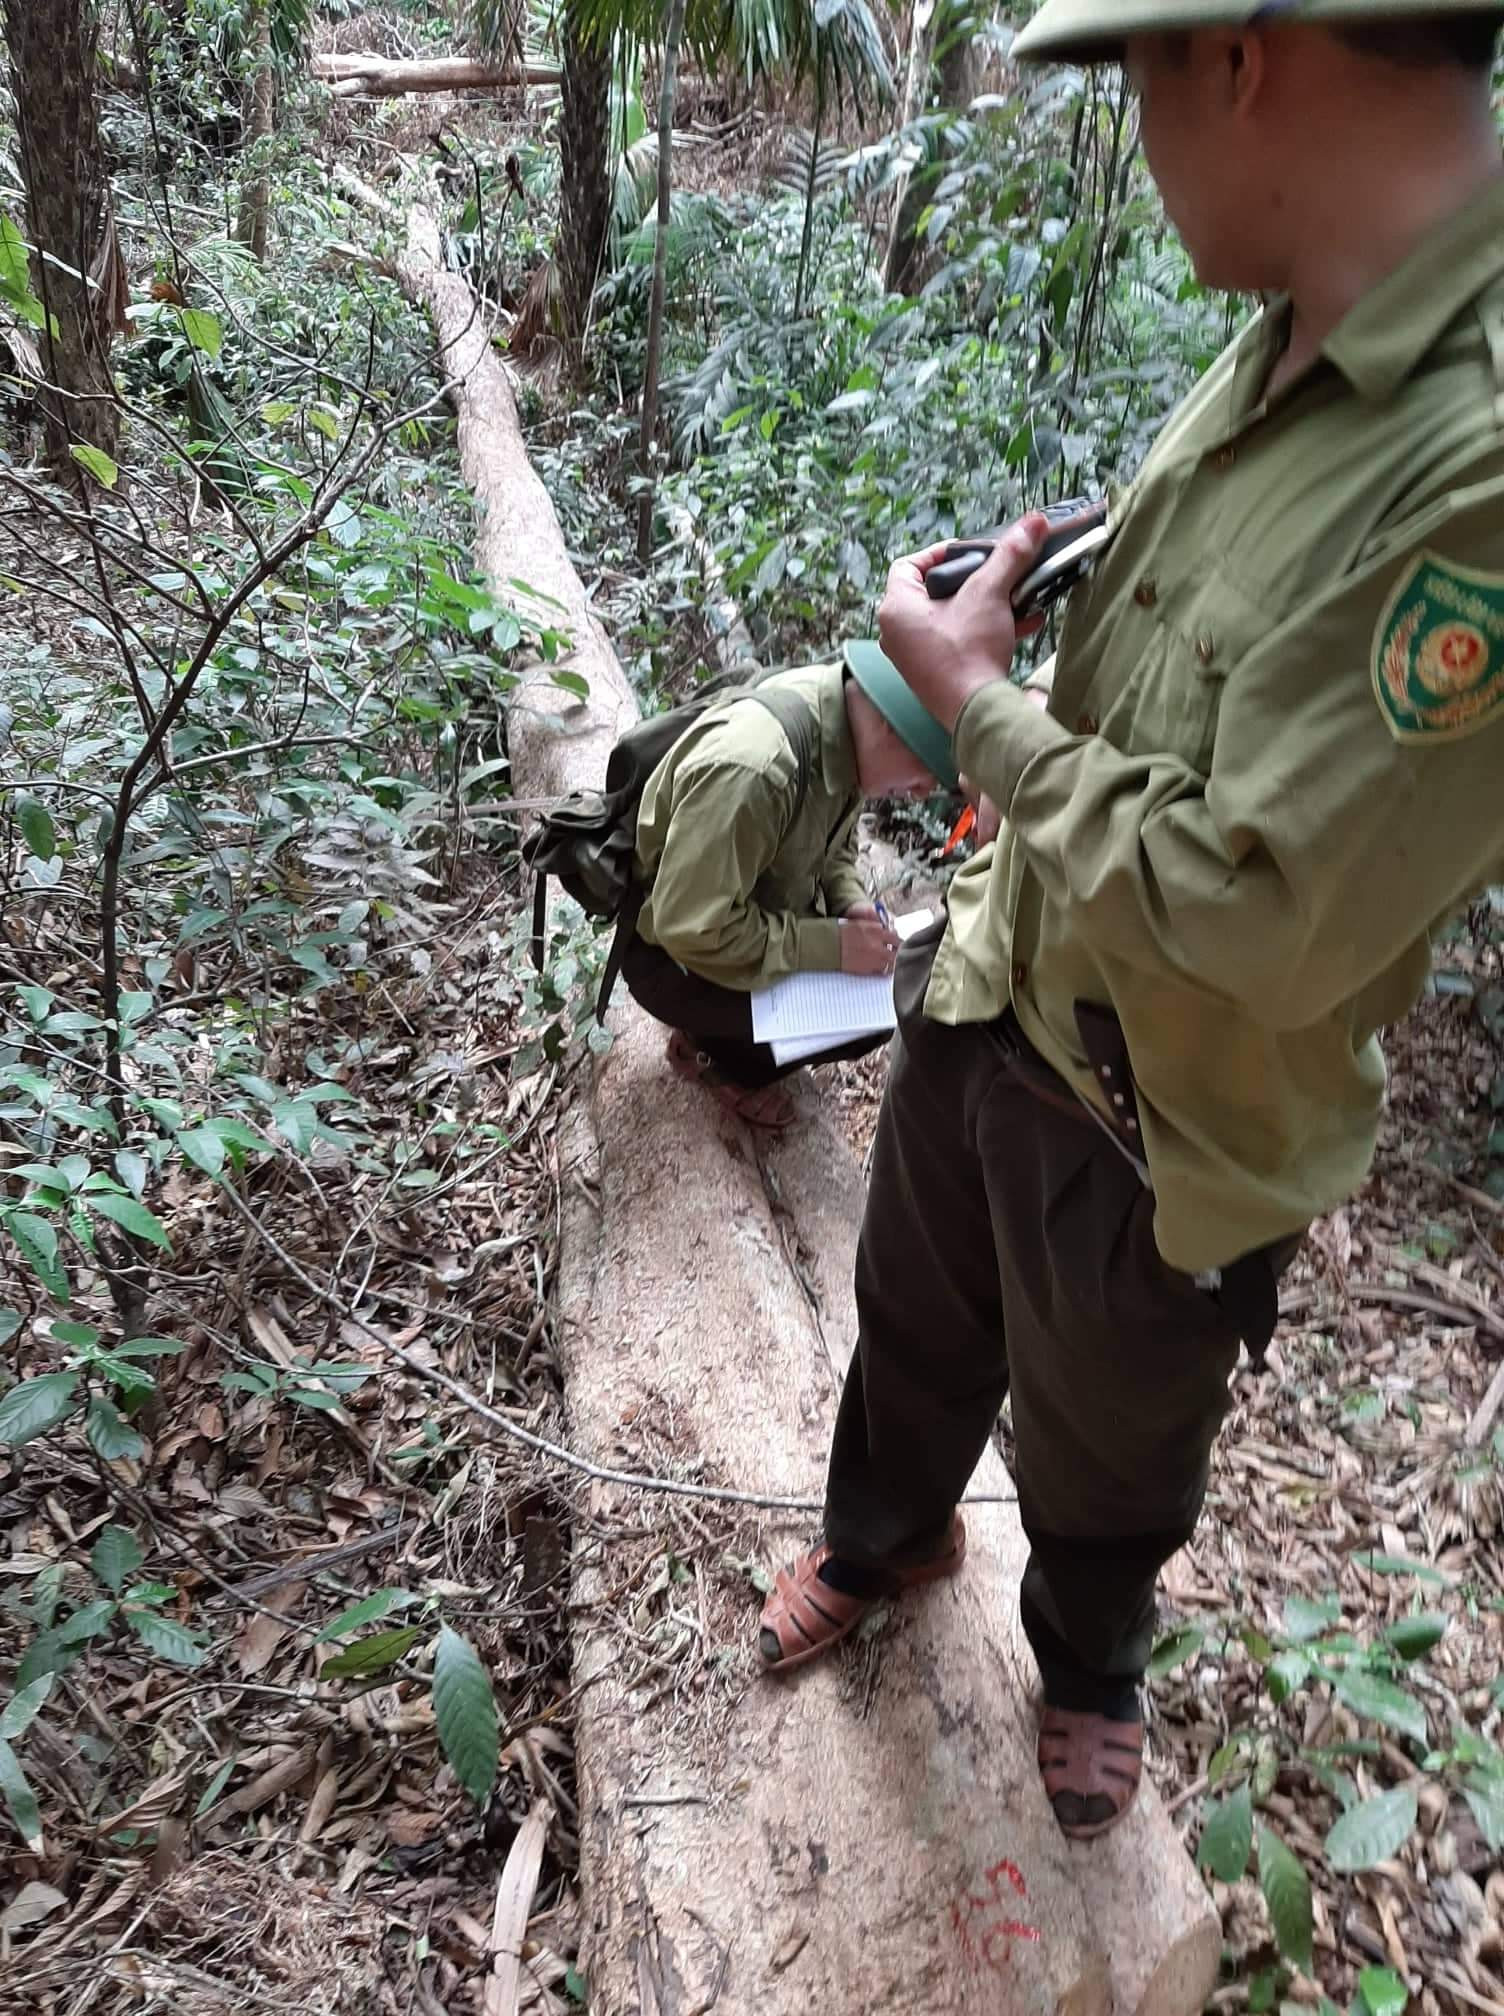 Cán bộ kiểm lâm Vườn Quốc gia Pù Mát kiểm kê cây gỗ bị chặt hạ trái phép trên địa bàn xã biên giới Môn Sơn. Ảnh: CTV